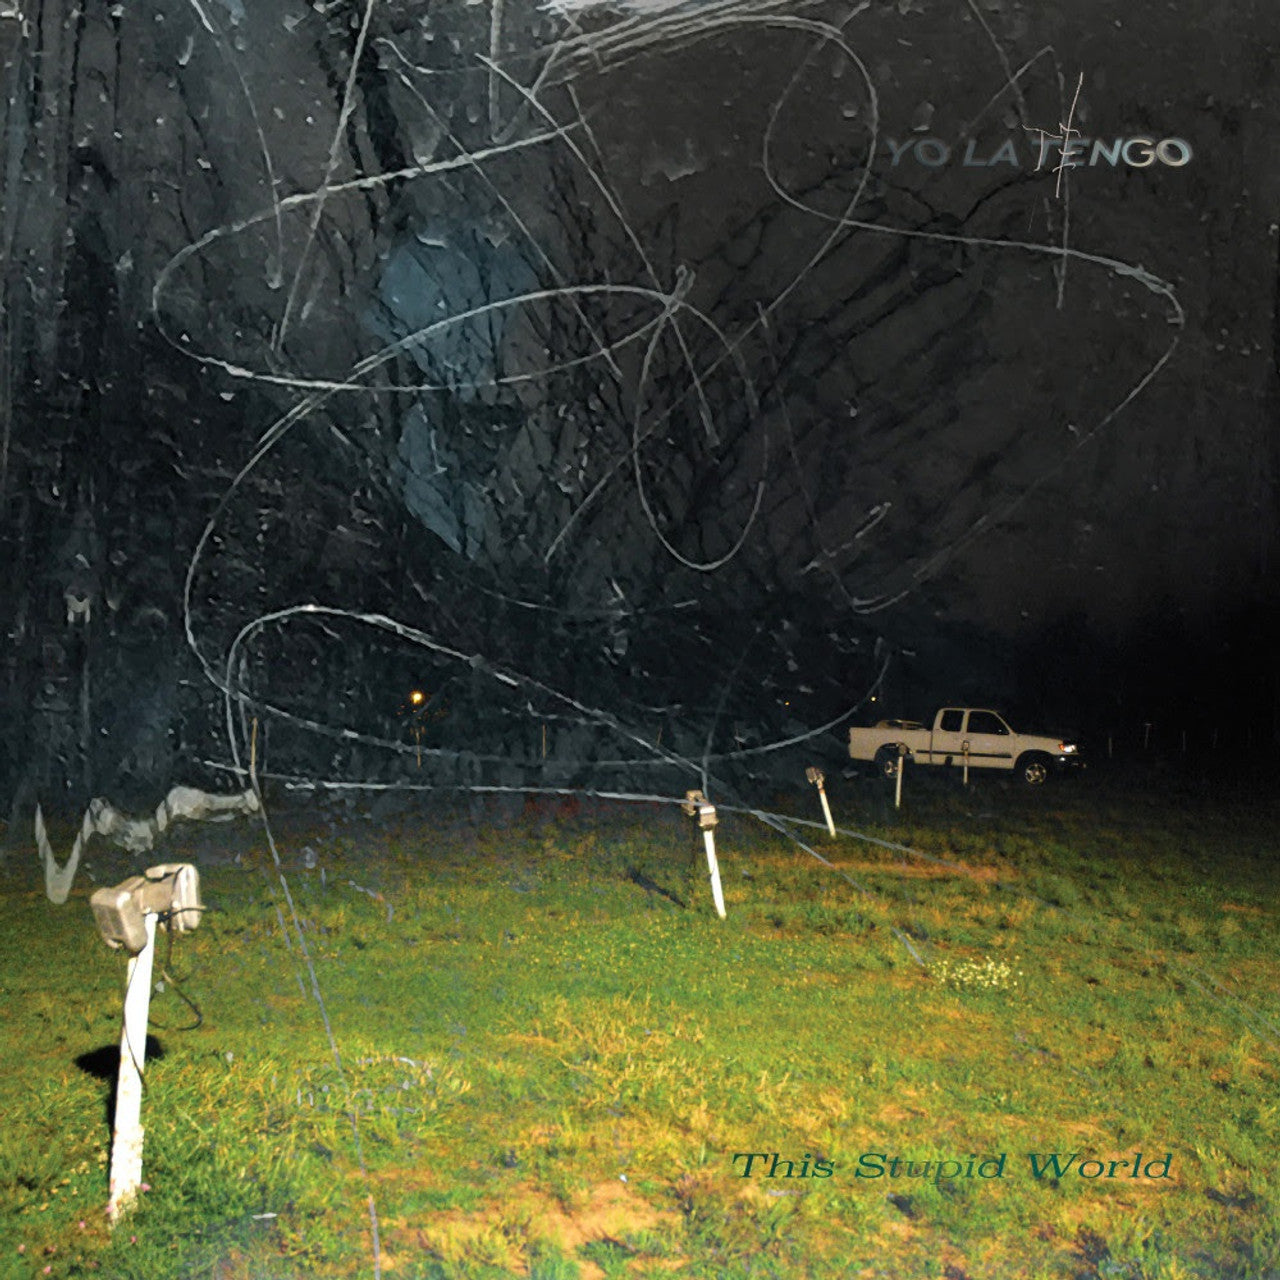 YO LA TENGO - ESTE MUNDO ESTUPIDO - 2-LP - LP DE VINILO